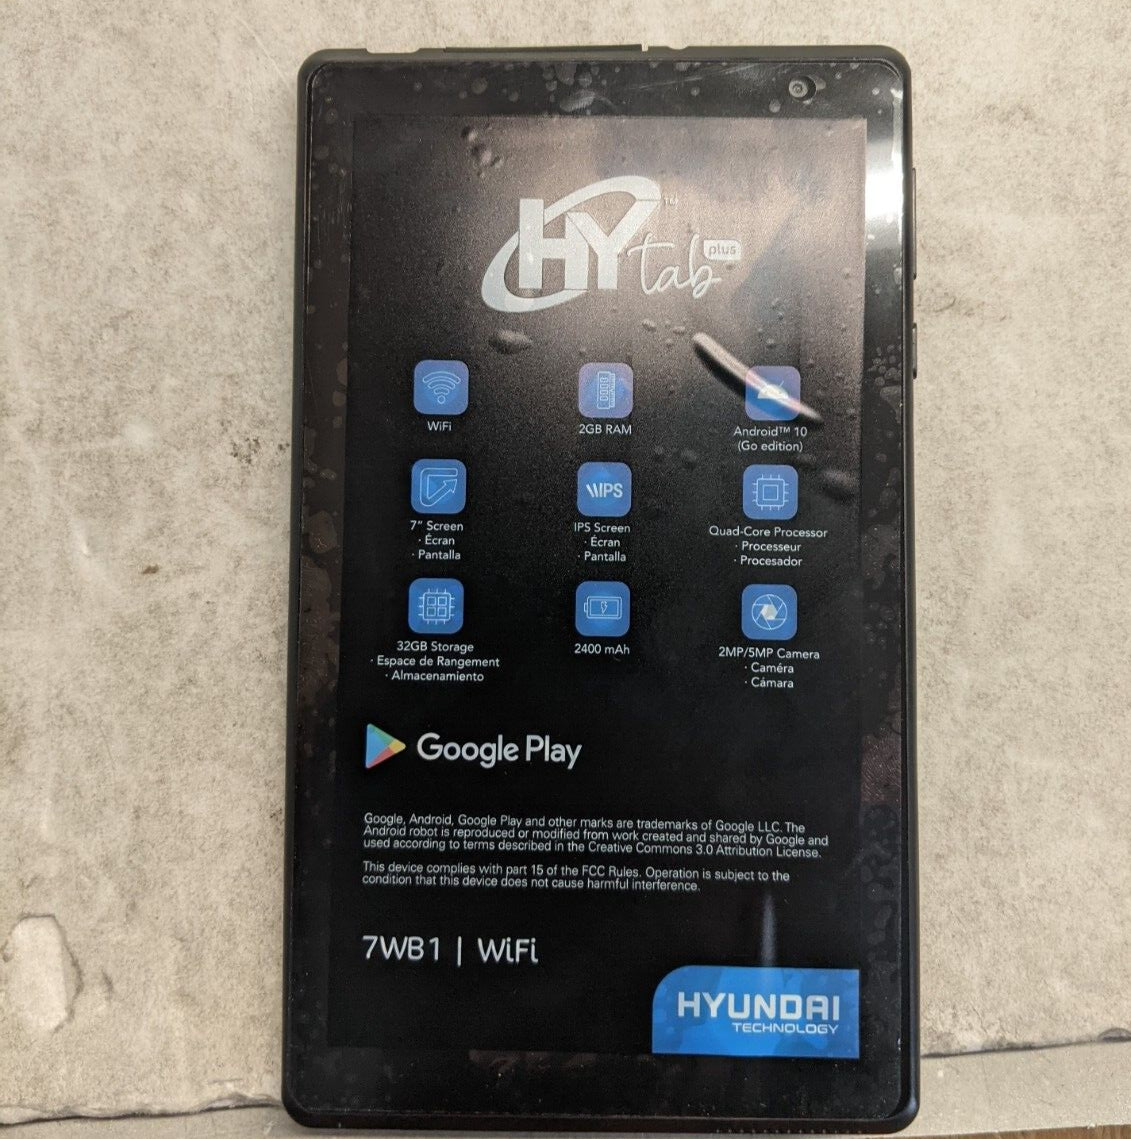 Hyundai Hytab Plus 1.5 GHz, 2GB Ram, 32GB SSD